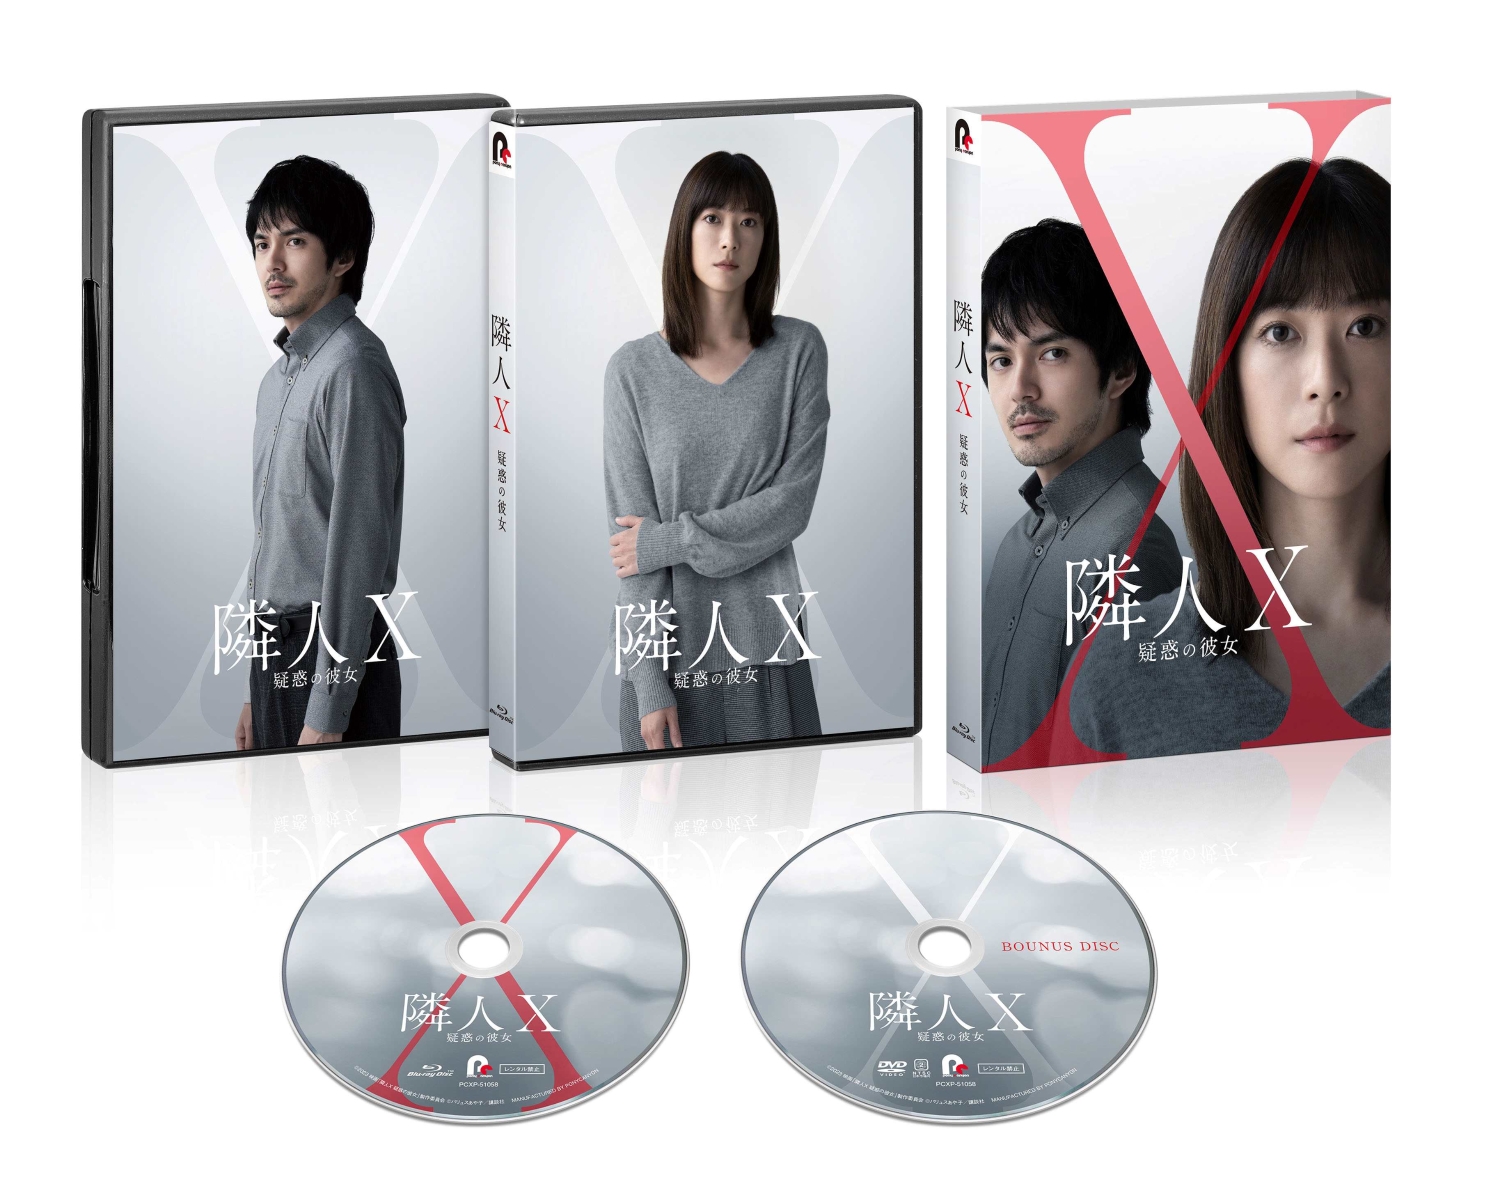 楽天ブックス: 映画「隣人X-疑惑の彼女ー」 特別版【Blu-ray】 - 熊澤 